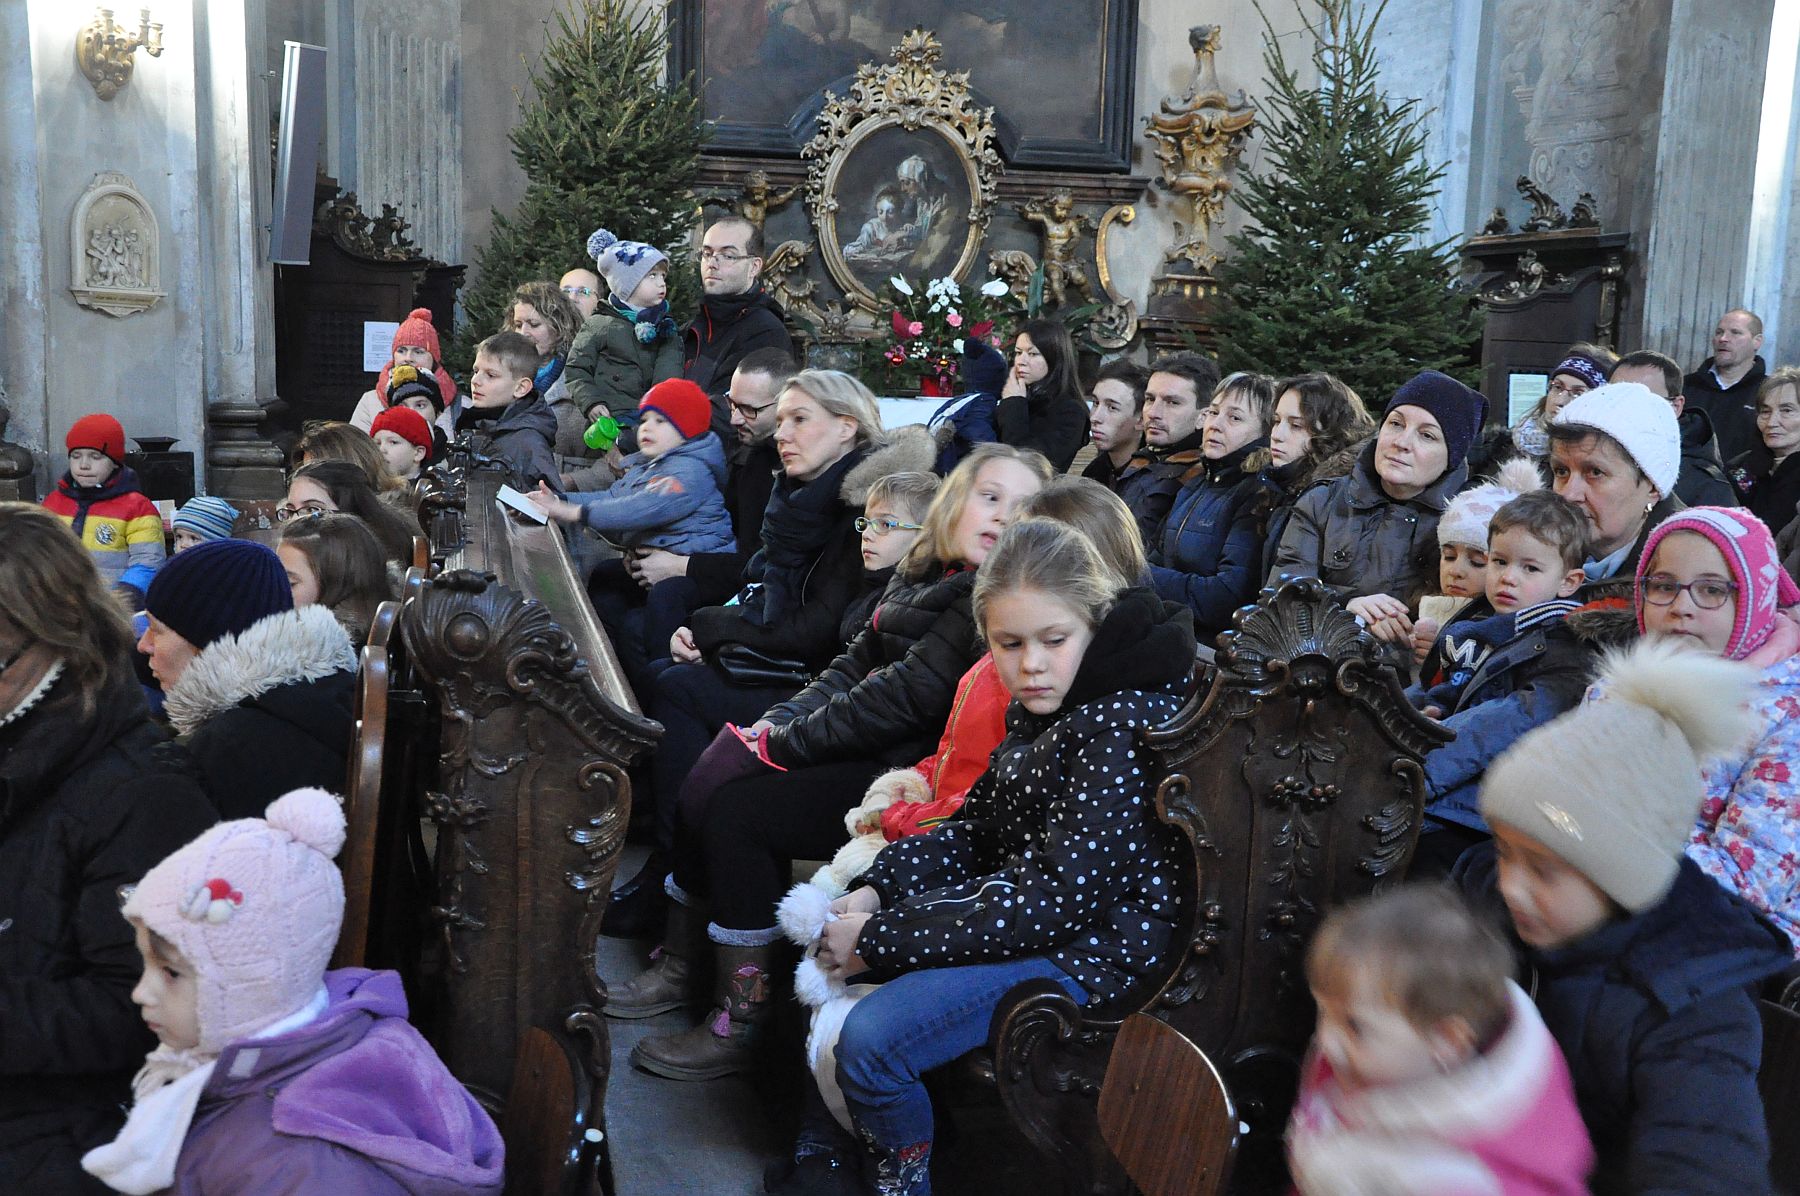 Így teltek a várakozás órái - szenteste délutánja Fehérvár templomaiban